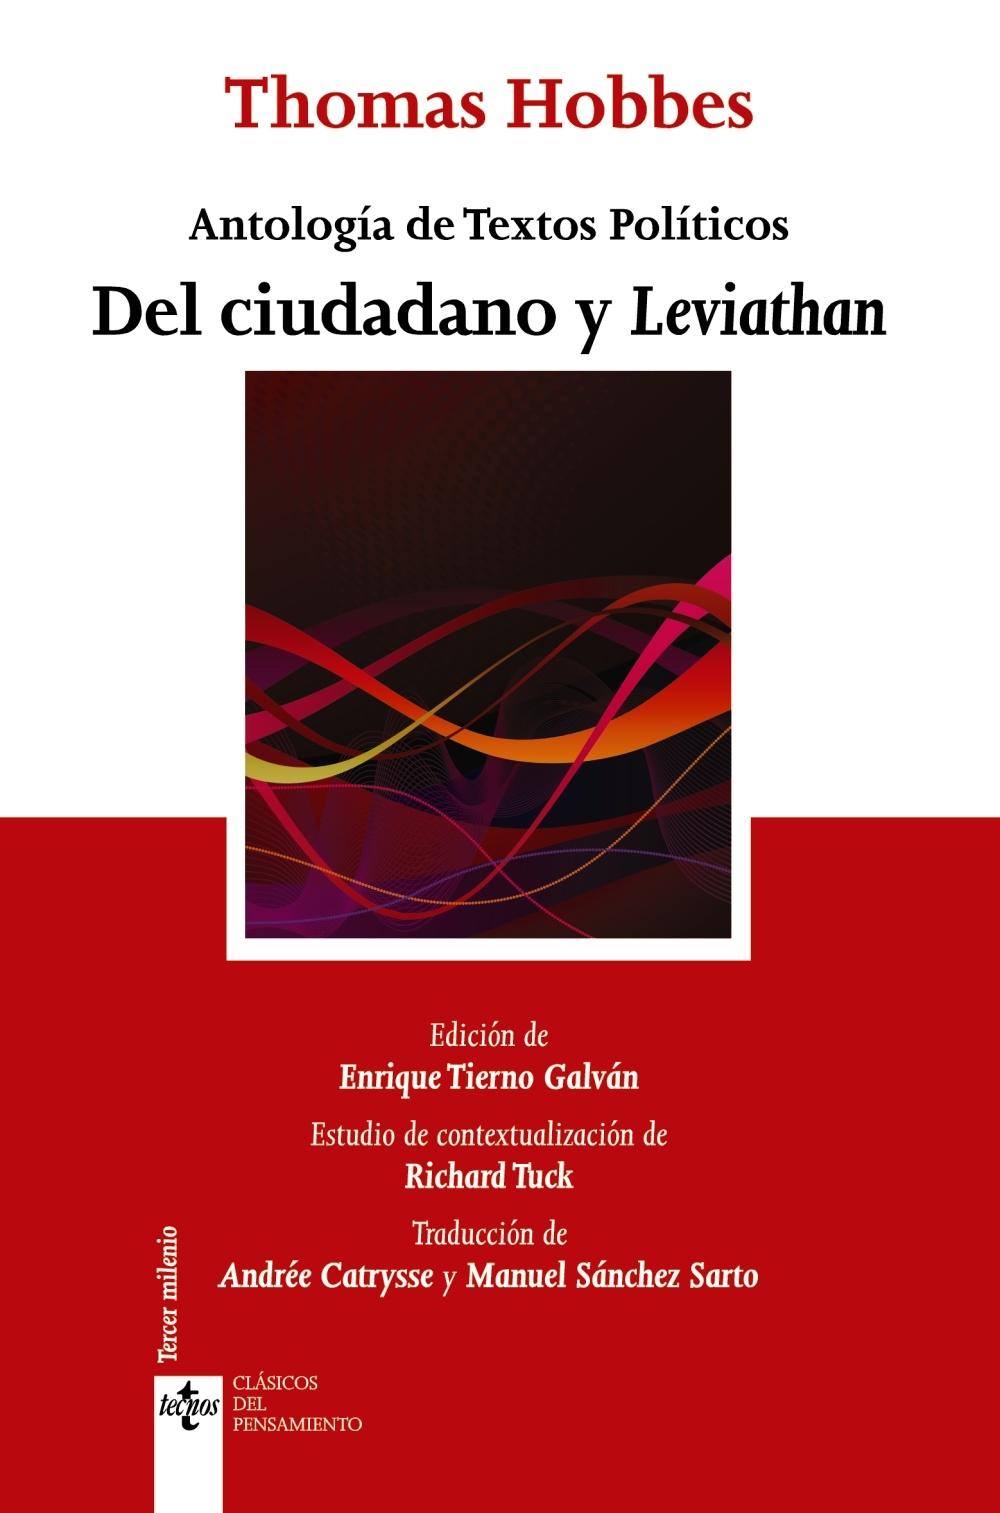 Del ciudadano y Leviathan "Antología de Textos Políticos". 